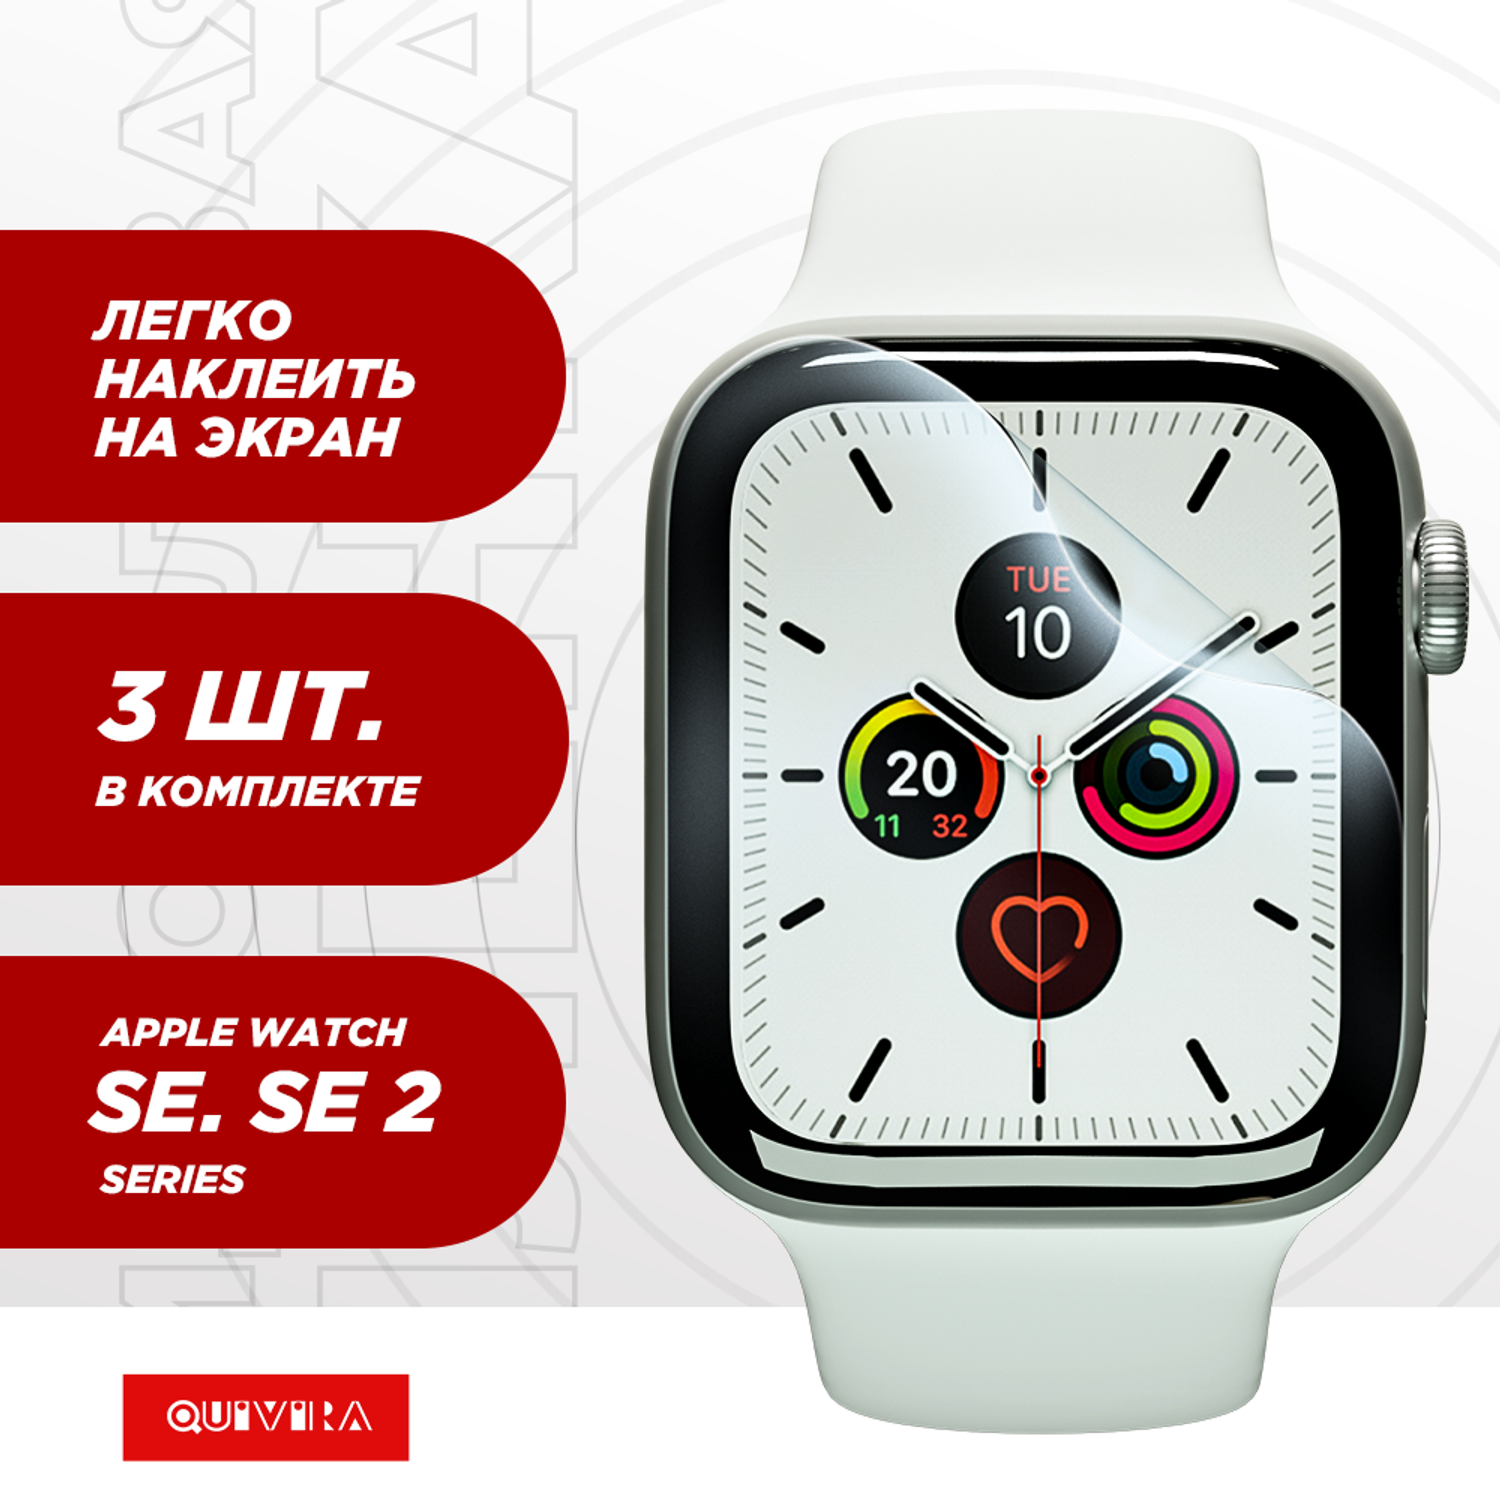 Защитная пленка QUIVIRA 3шт. Гидрогелевая на Apple Watch 40mm Series SE SE2 Глянцевая - фото 5